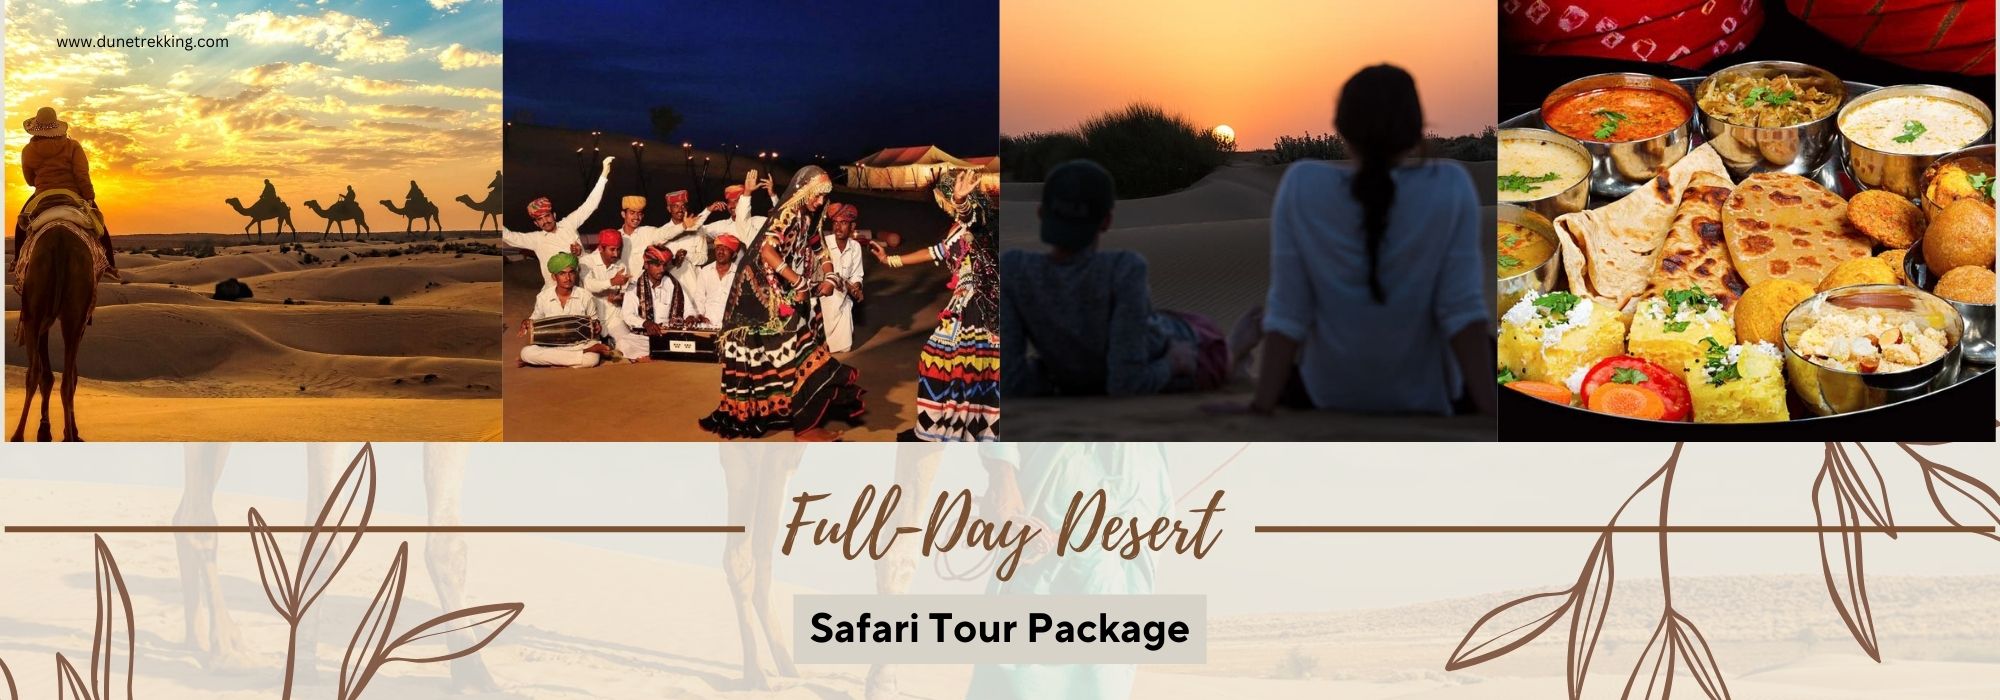 Full Day Desert Safari Tour Package- dunetrekking